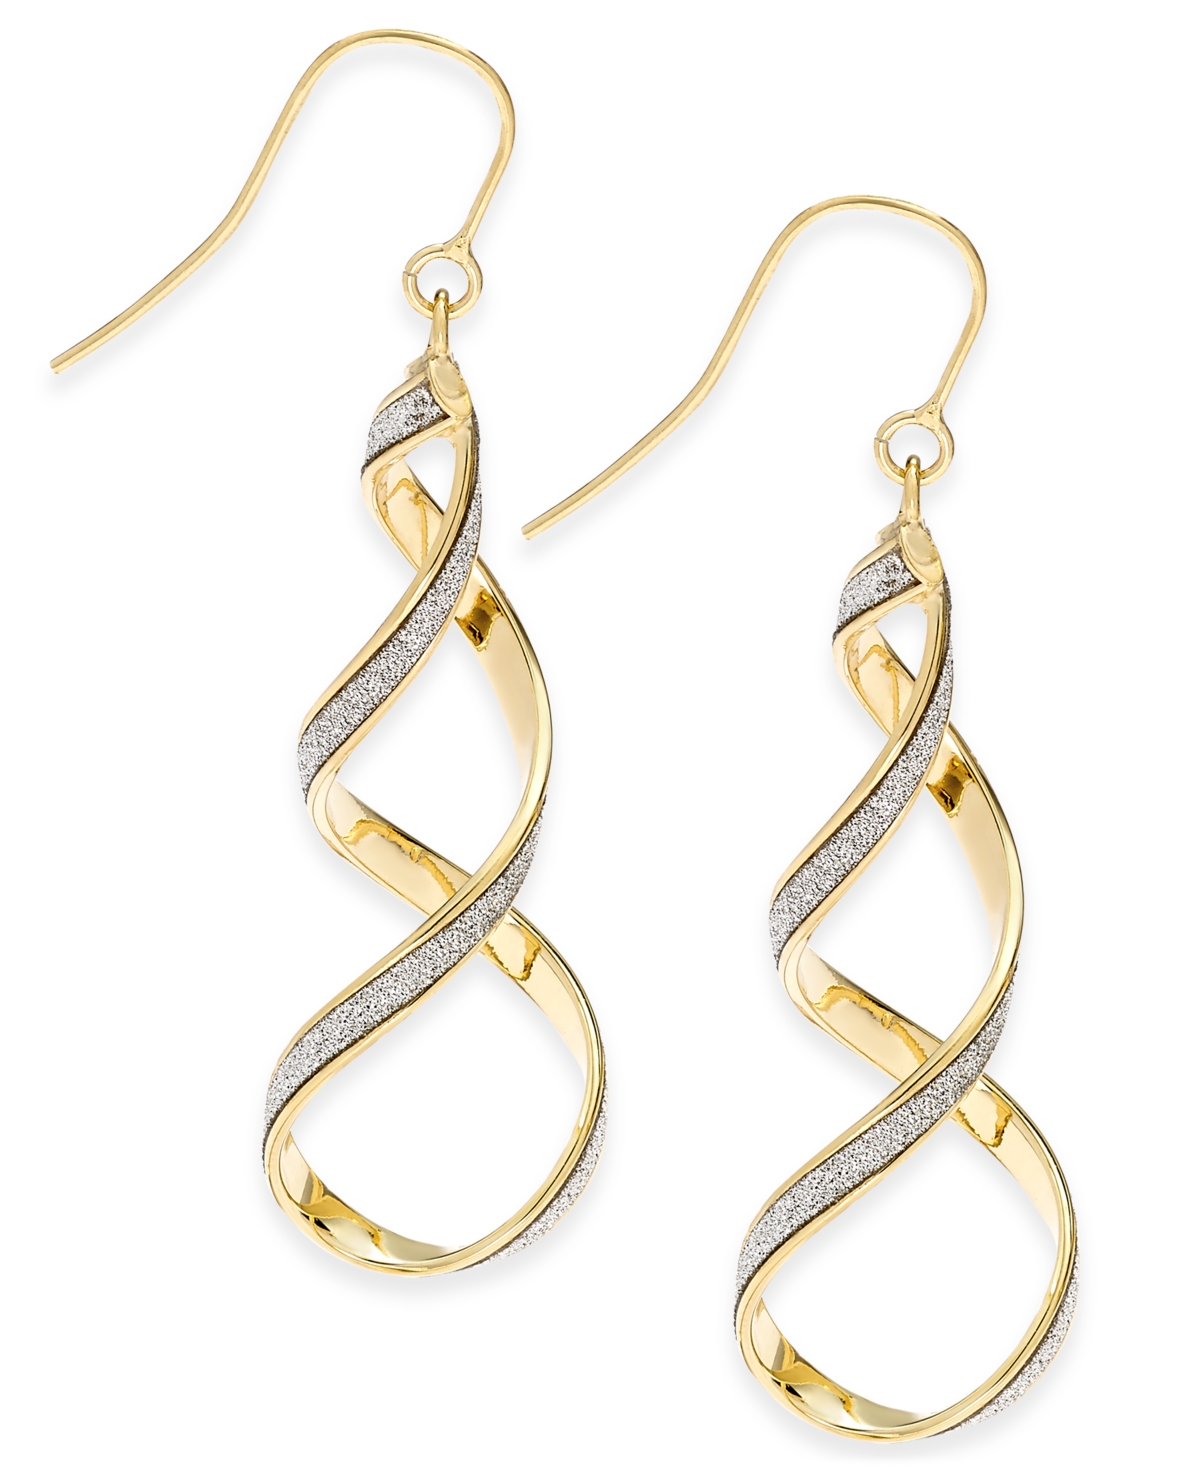 Glitter Twist Drop Earrings in 14k Gold